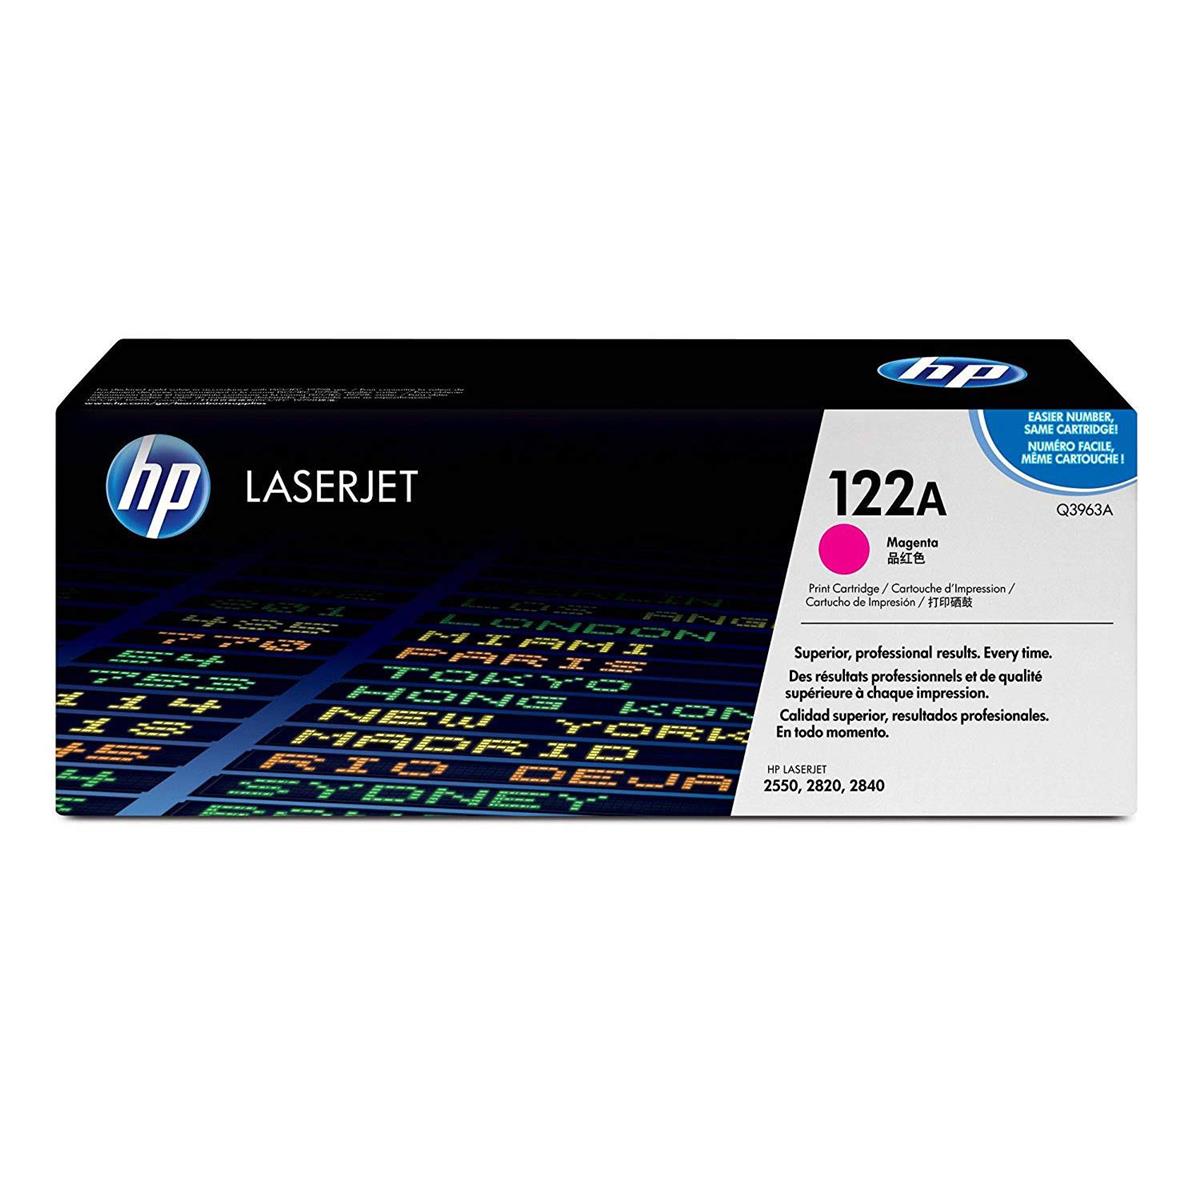 Image of HP Magenta Print Cartridge for HP LaserJet Printers